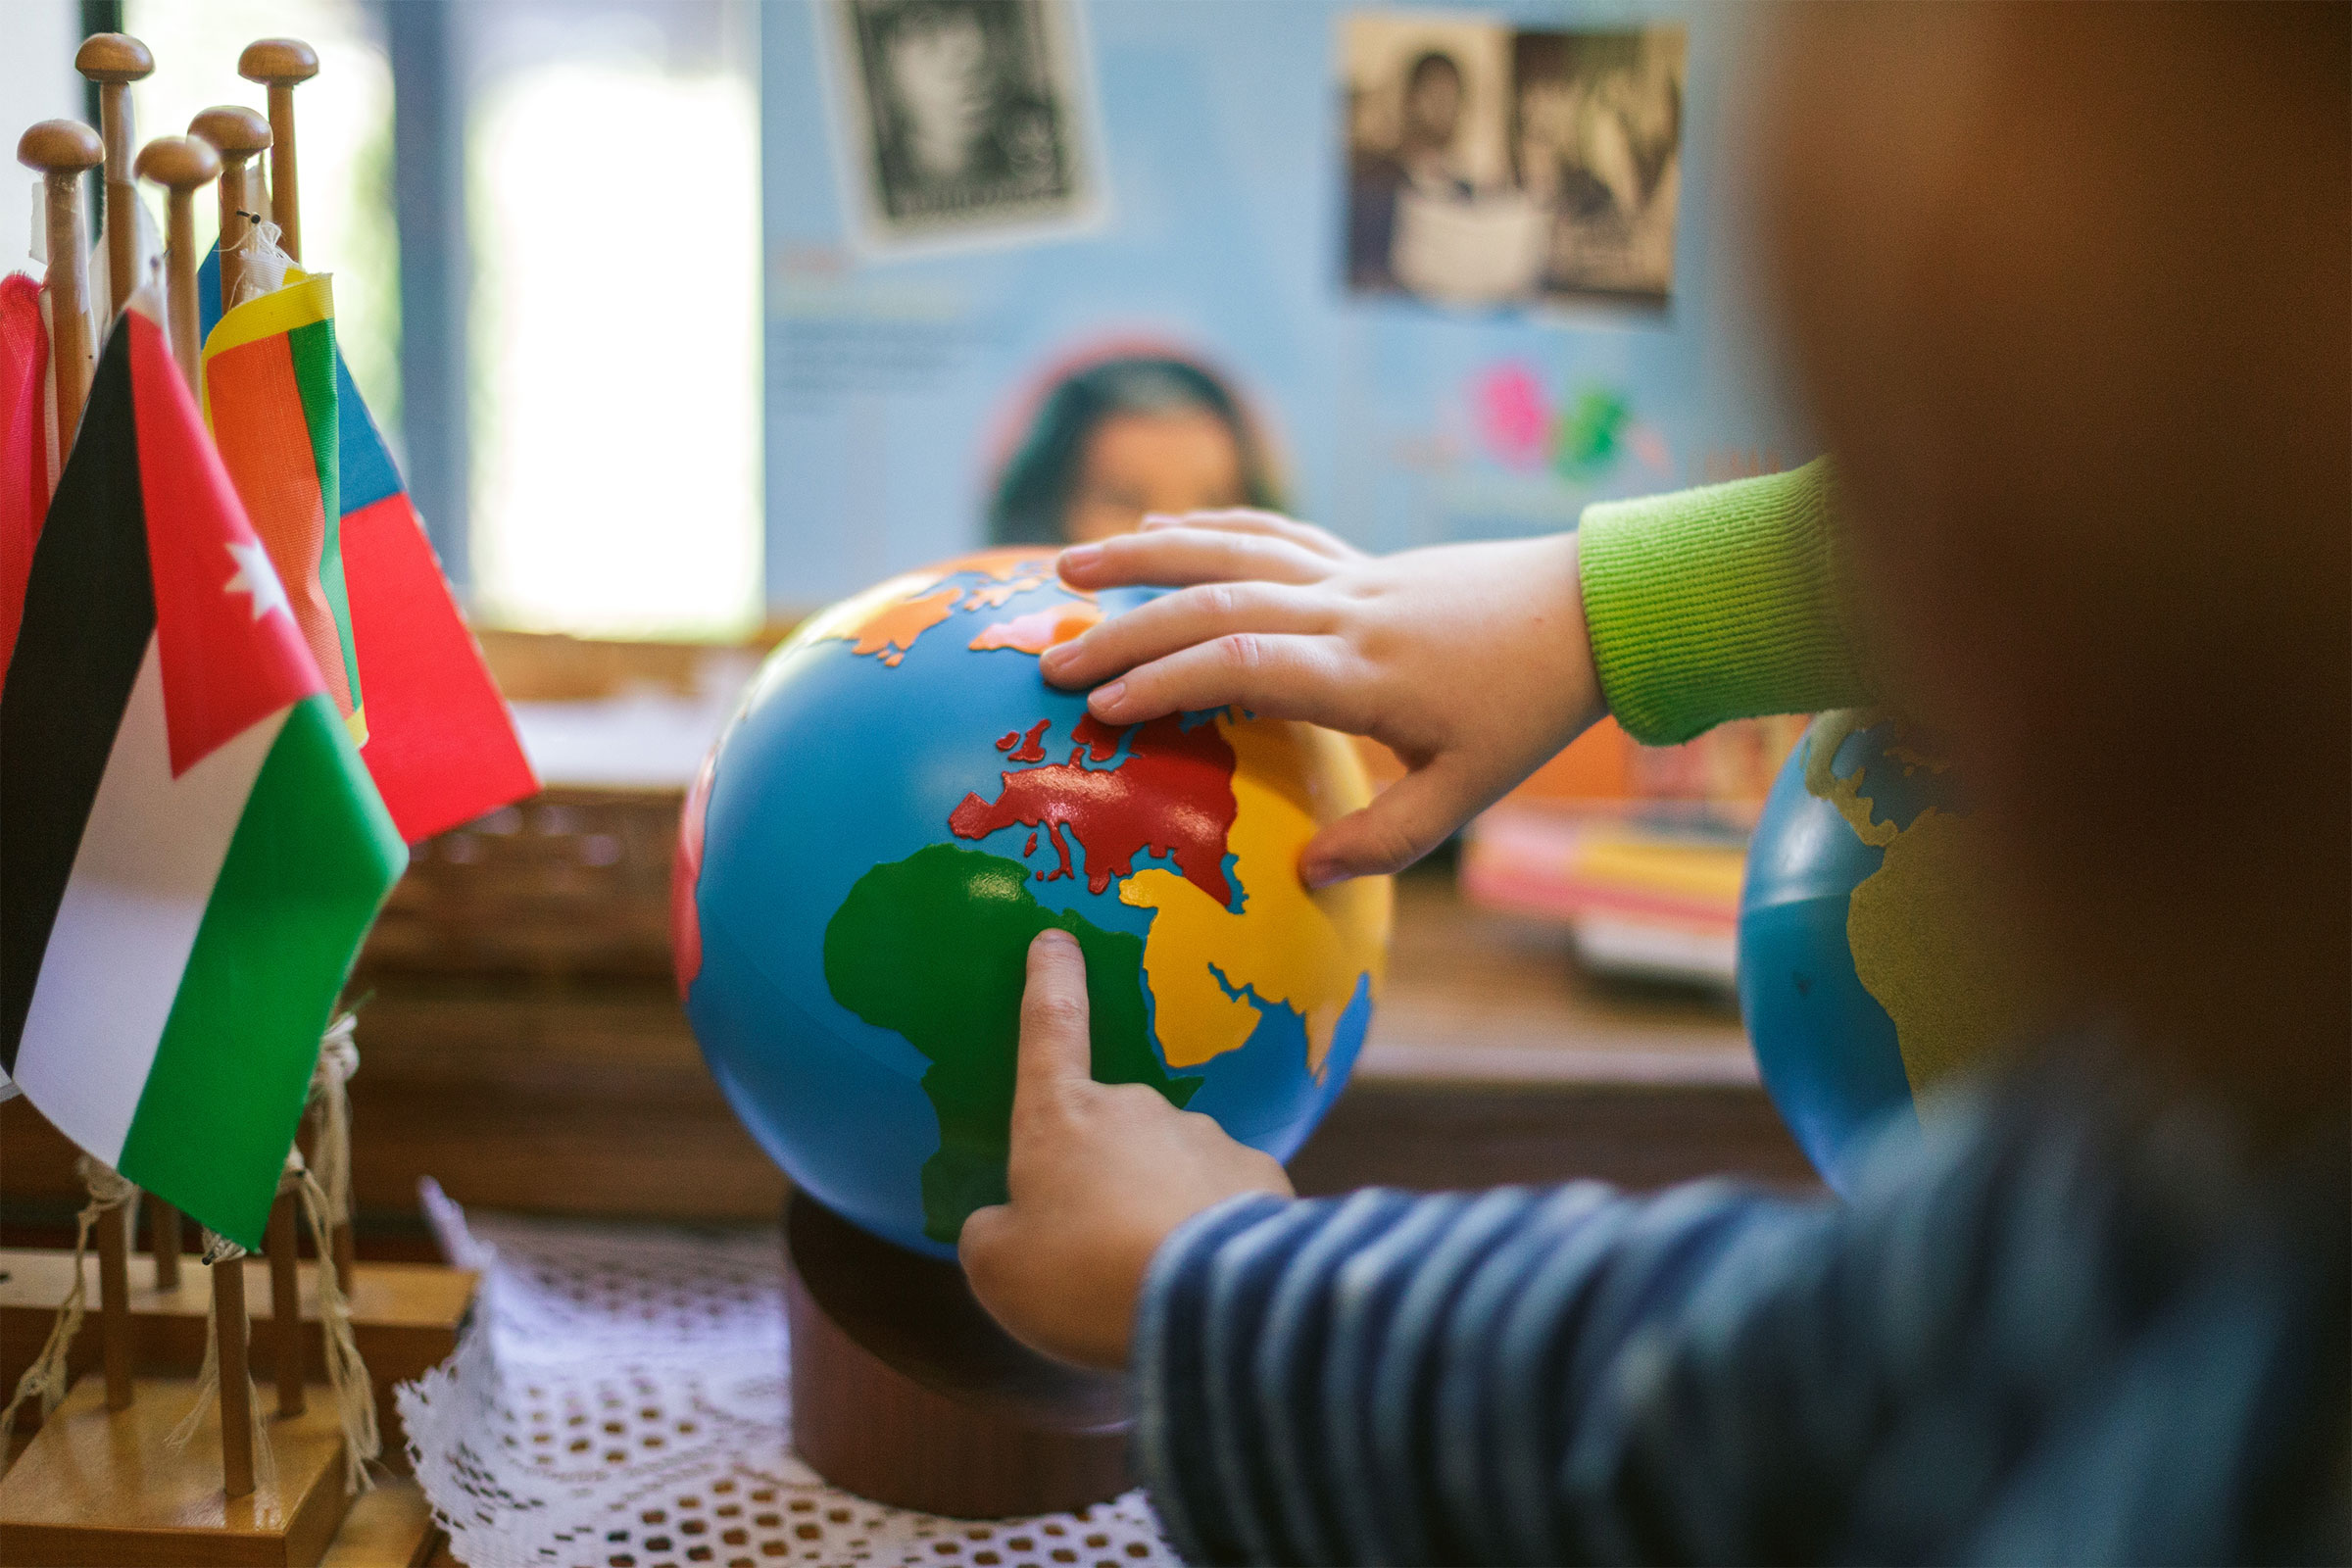 Child's hands on globe in Montessori classroom